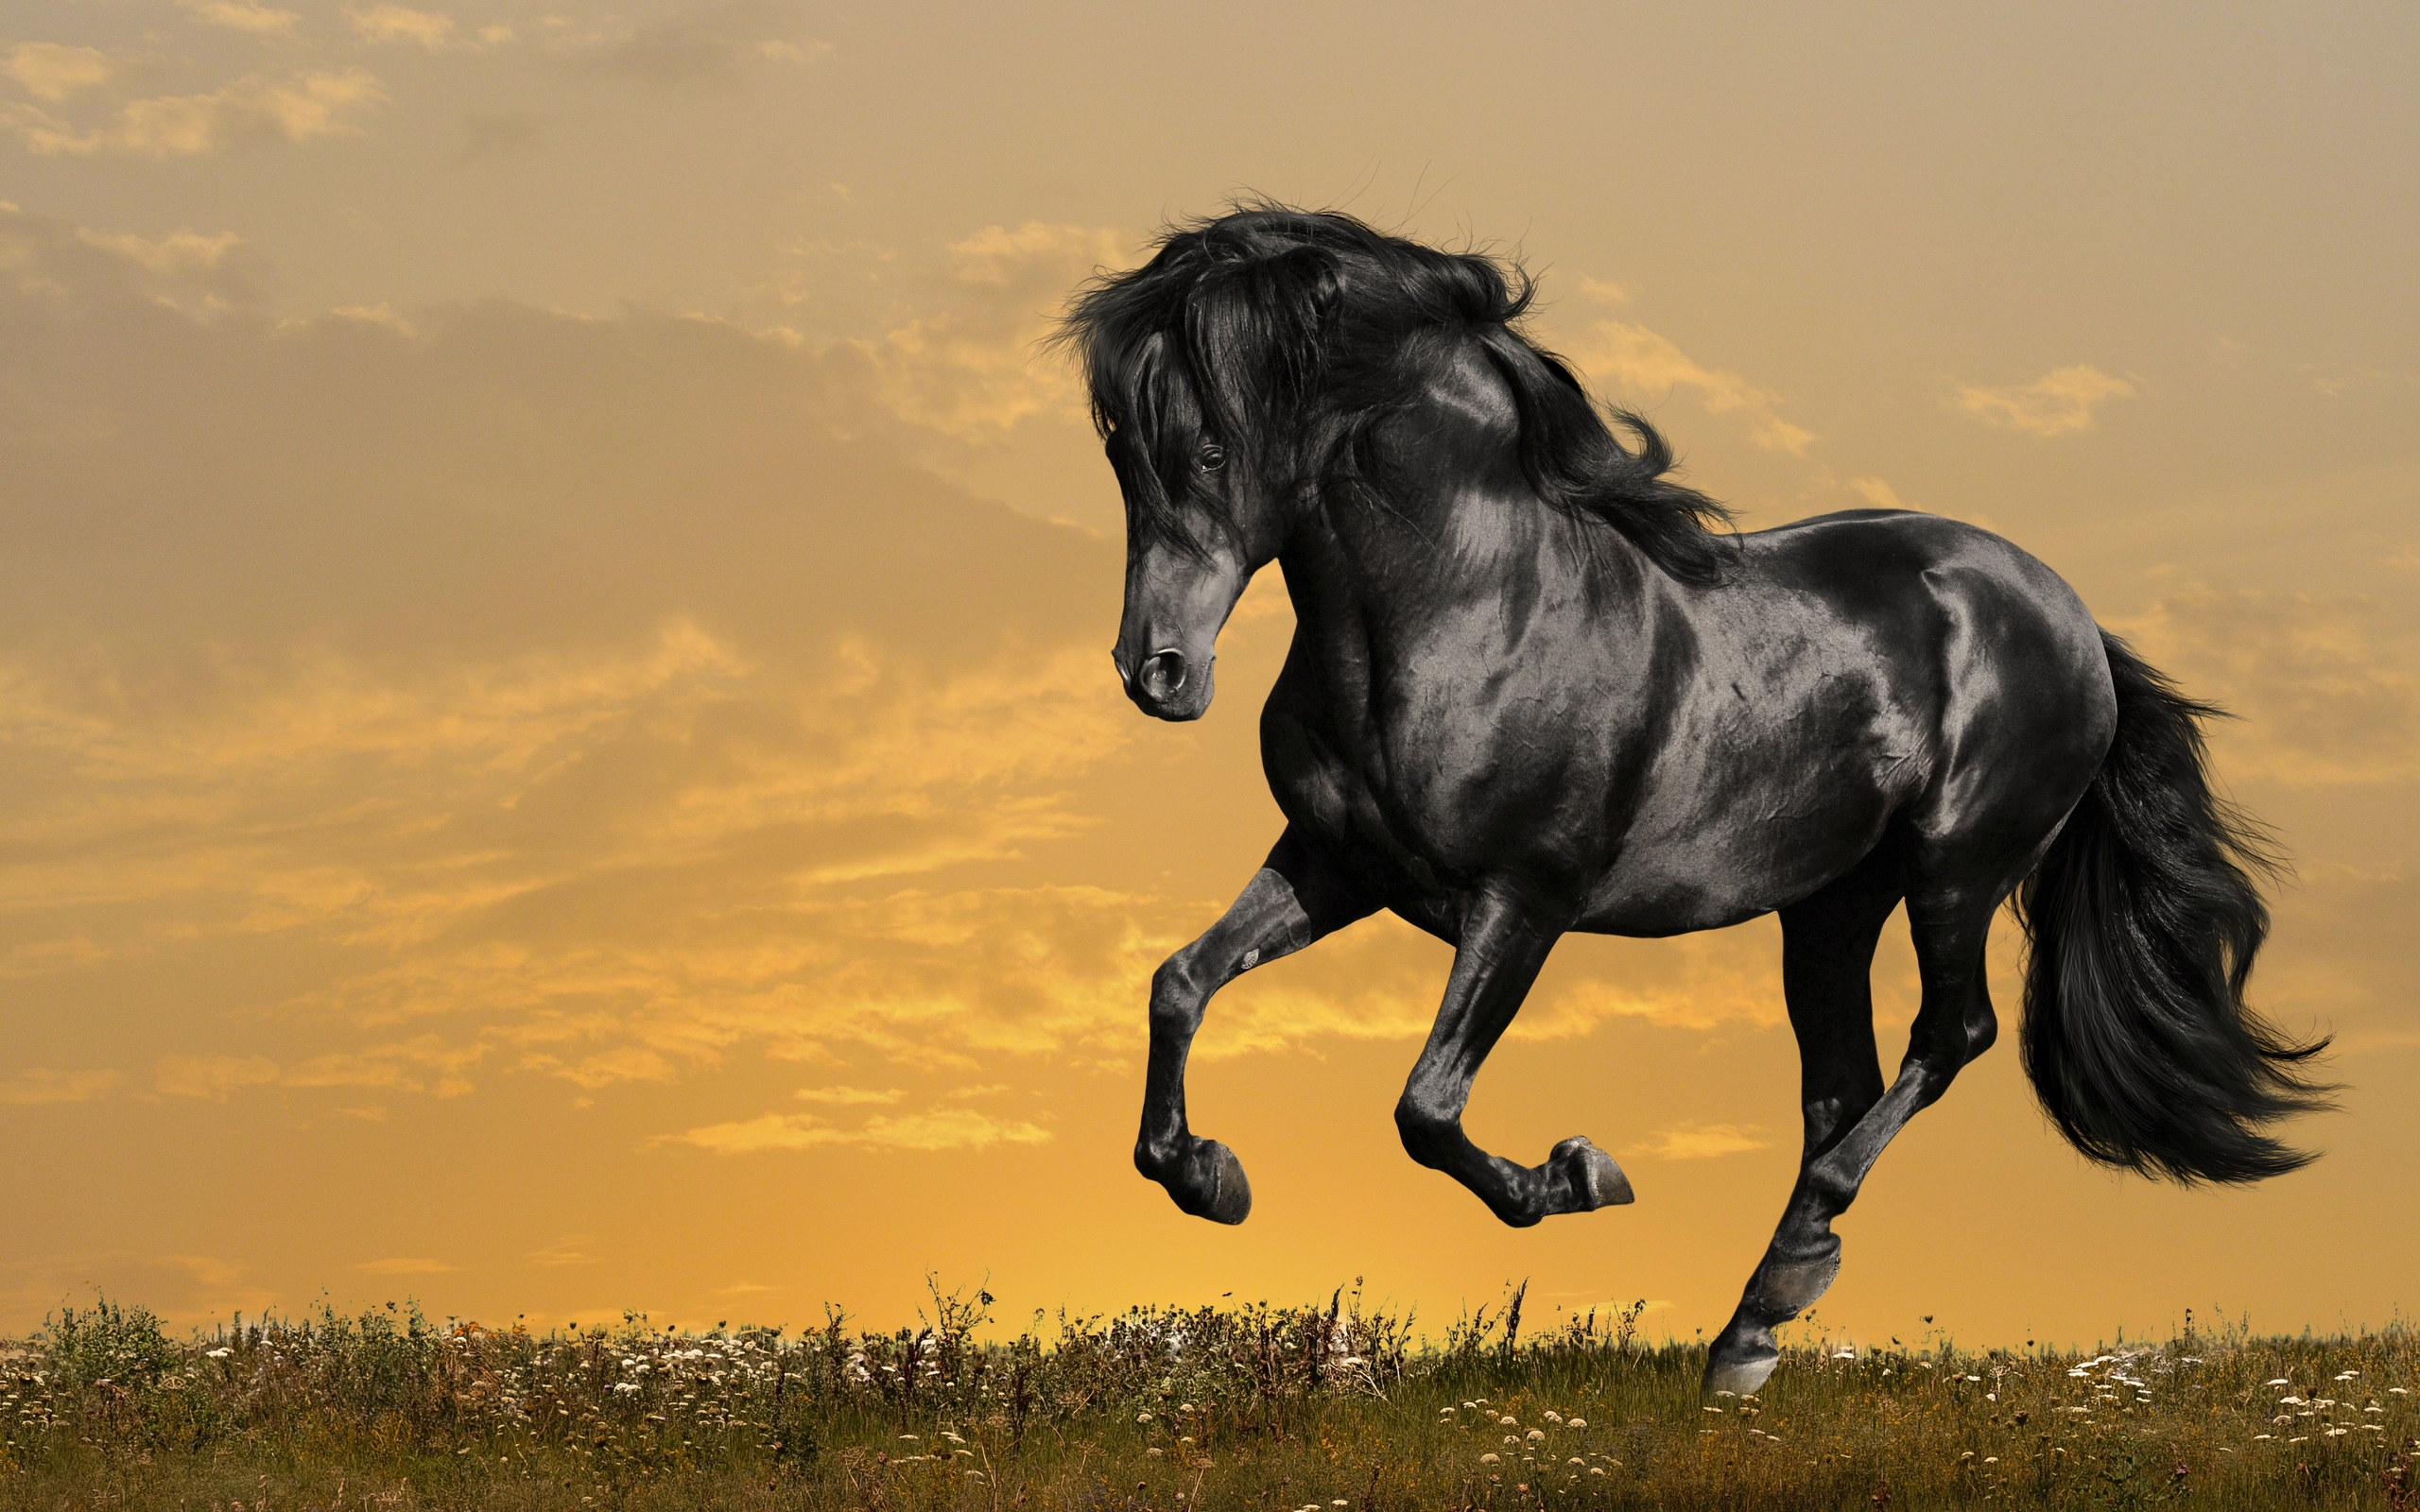 Tuyển Chọn Hình Ảnh Con Ngựa Đẹp Nhất: Hơn 999 Bức Ảnh 4K Sắc Nét